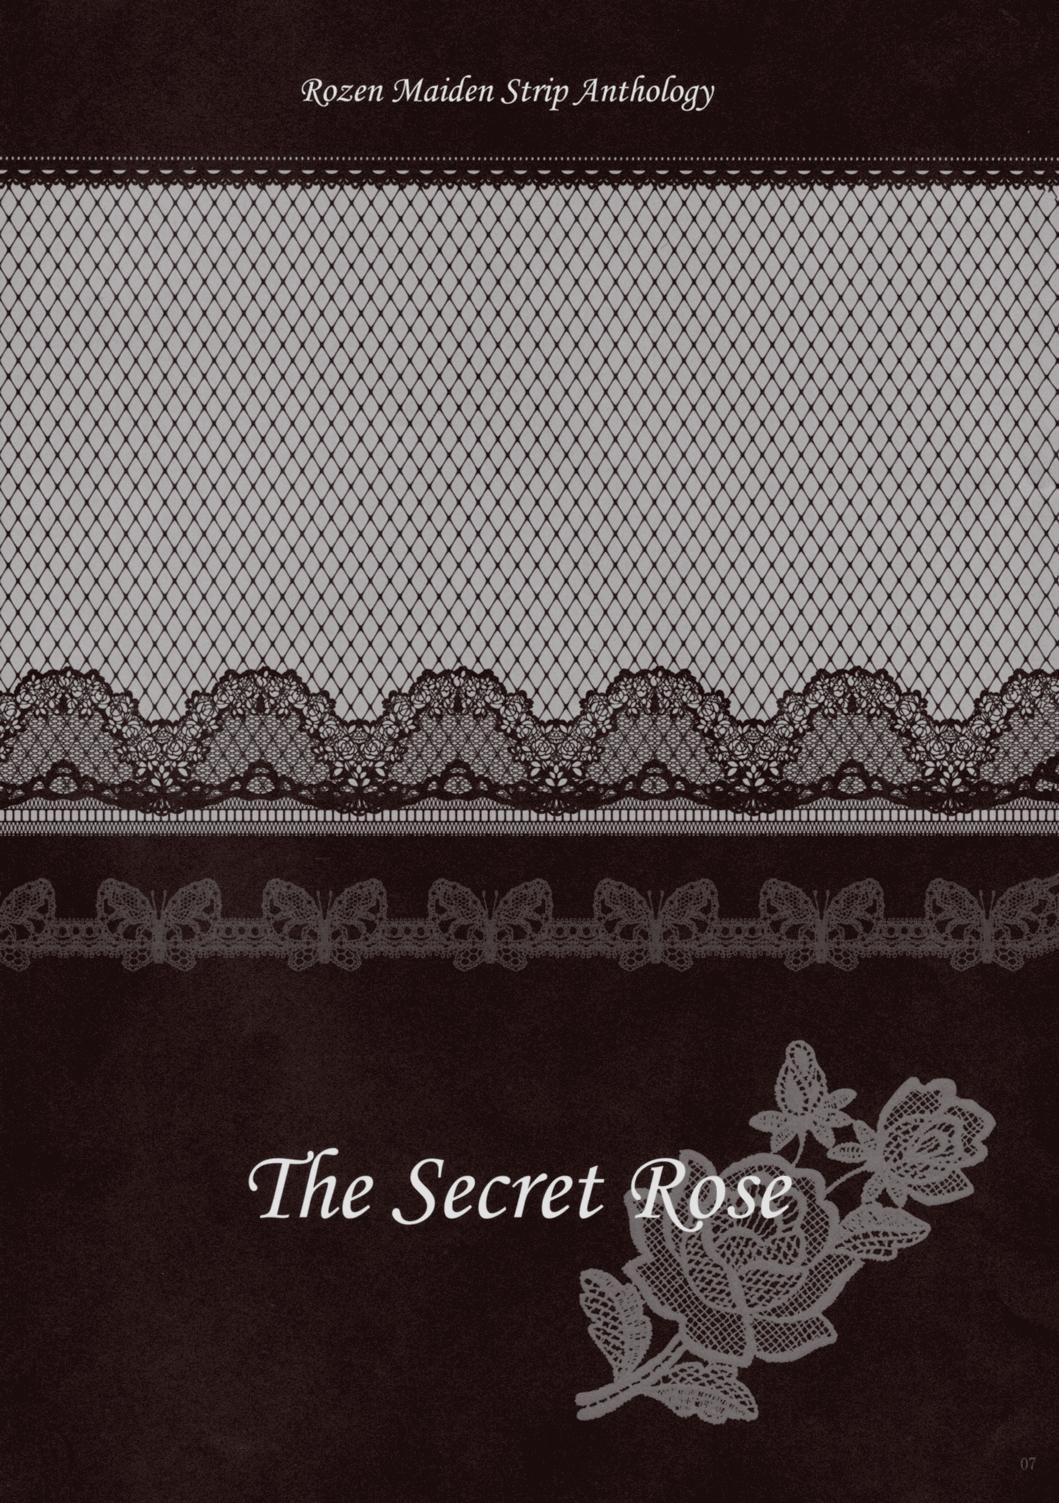 Long Hair Rozen Maiden Strip Gallery "The Secret Rose" - Rozen maiden Anal Gape - Page 6